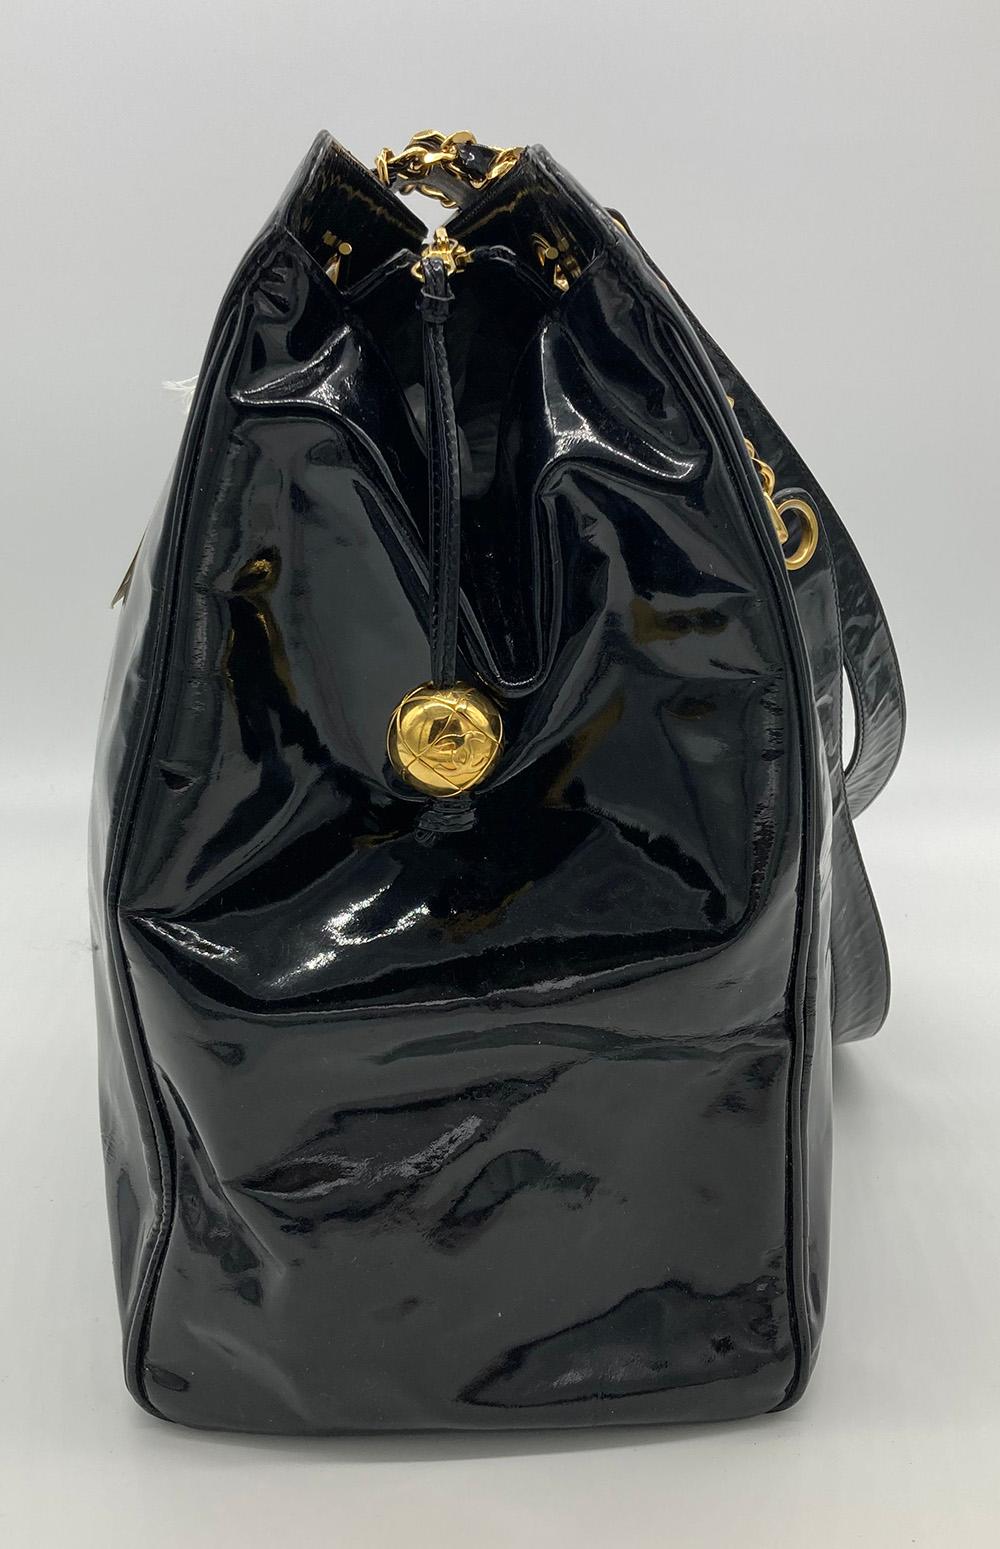 Vintage Chanel Black Patent XL Weekender Super Model Tote en bon état. Extérieur en cuir verni noir garni de cuir tressé et de bandoulières en cuir verni à chaîne et de ferrures dorées, dans le style intemporel d'un super modèle de week-end vintage.